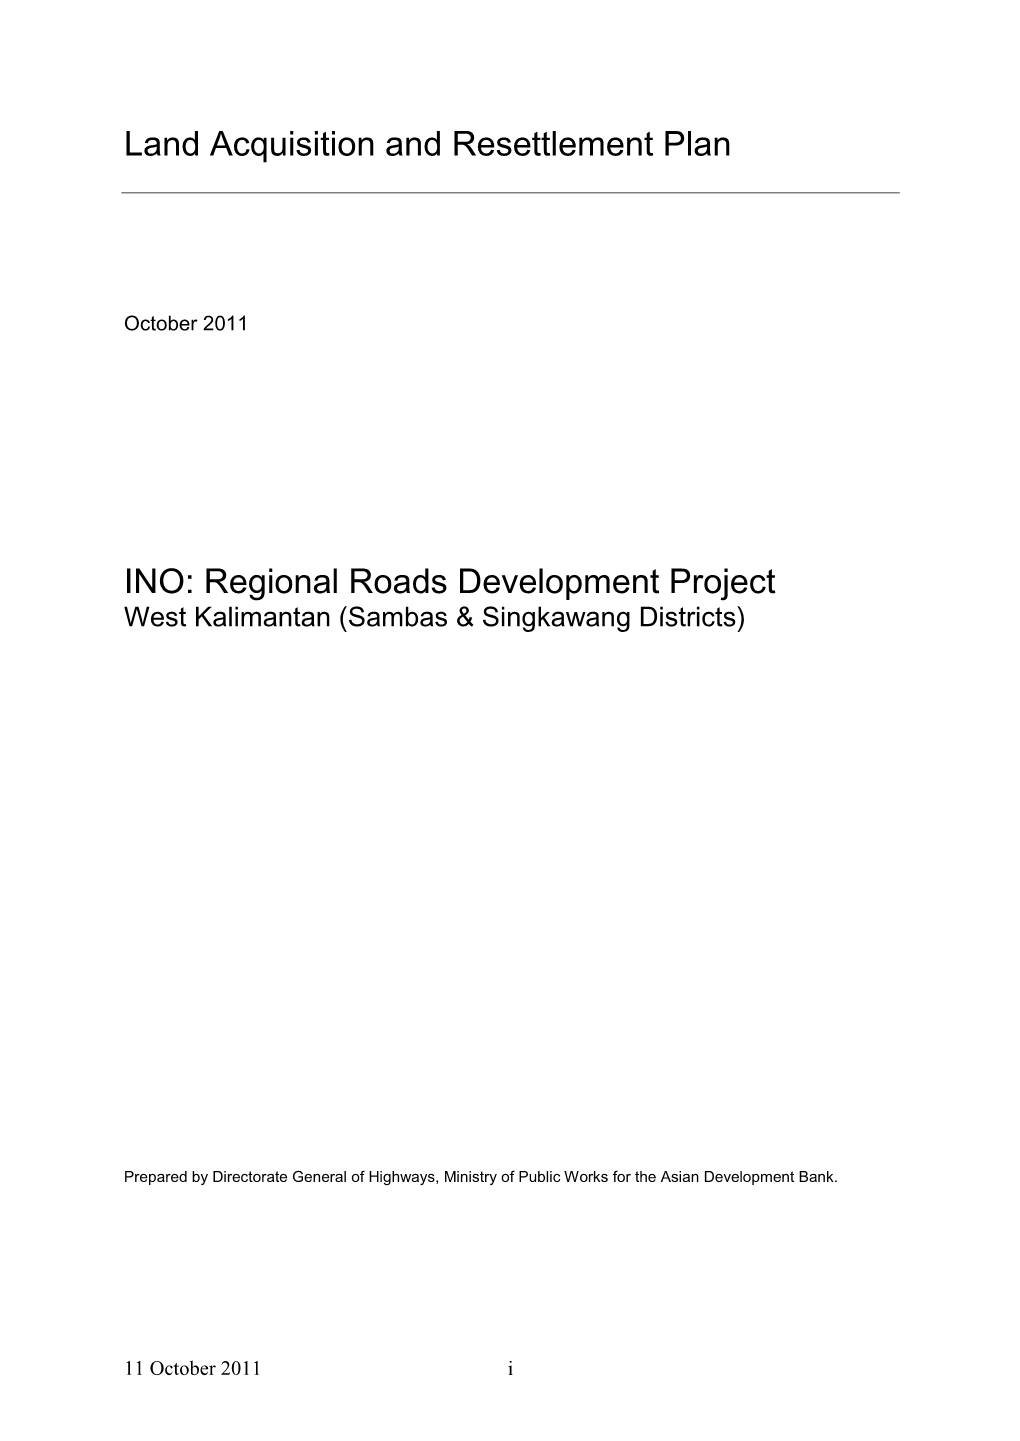 Regional Roads Development Project: West Kalimantan (Sambas